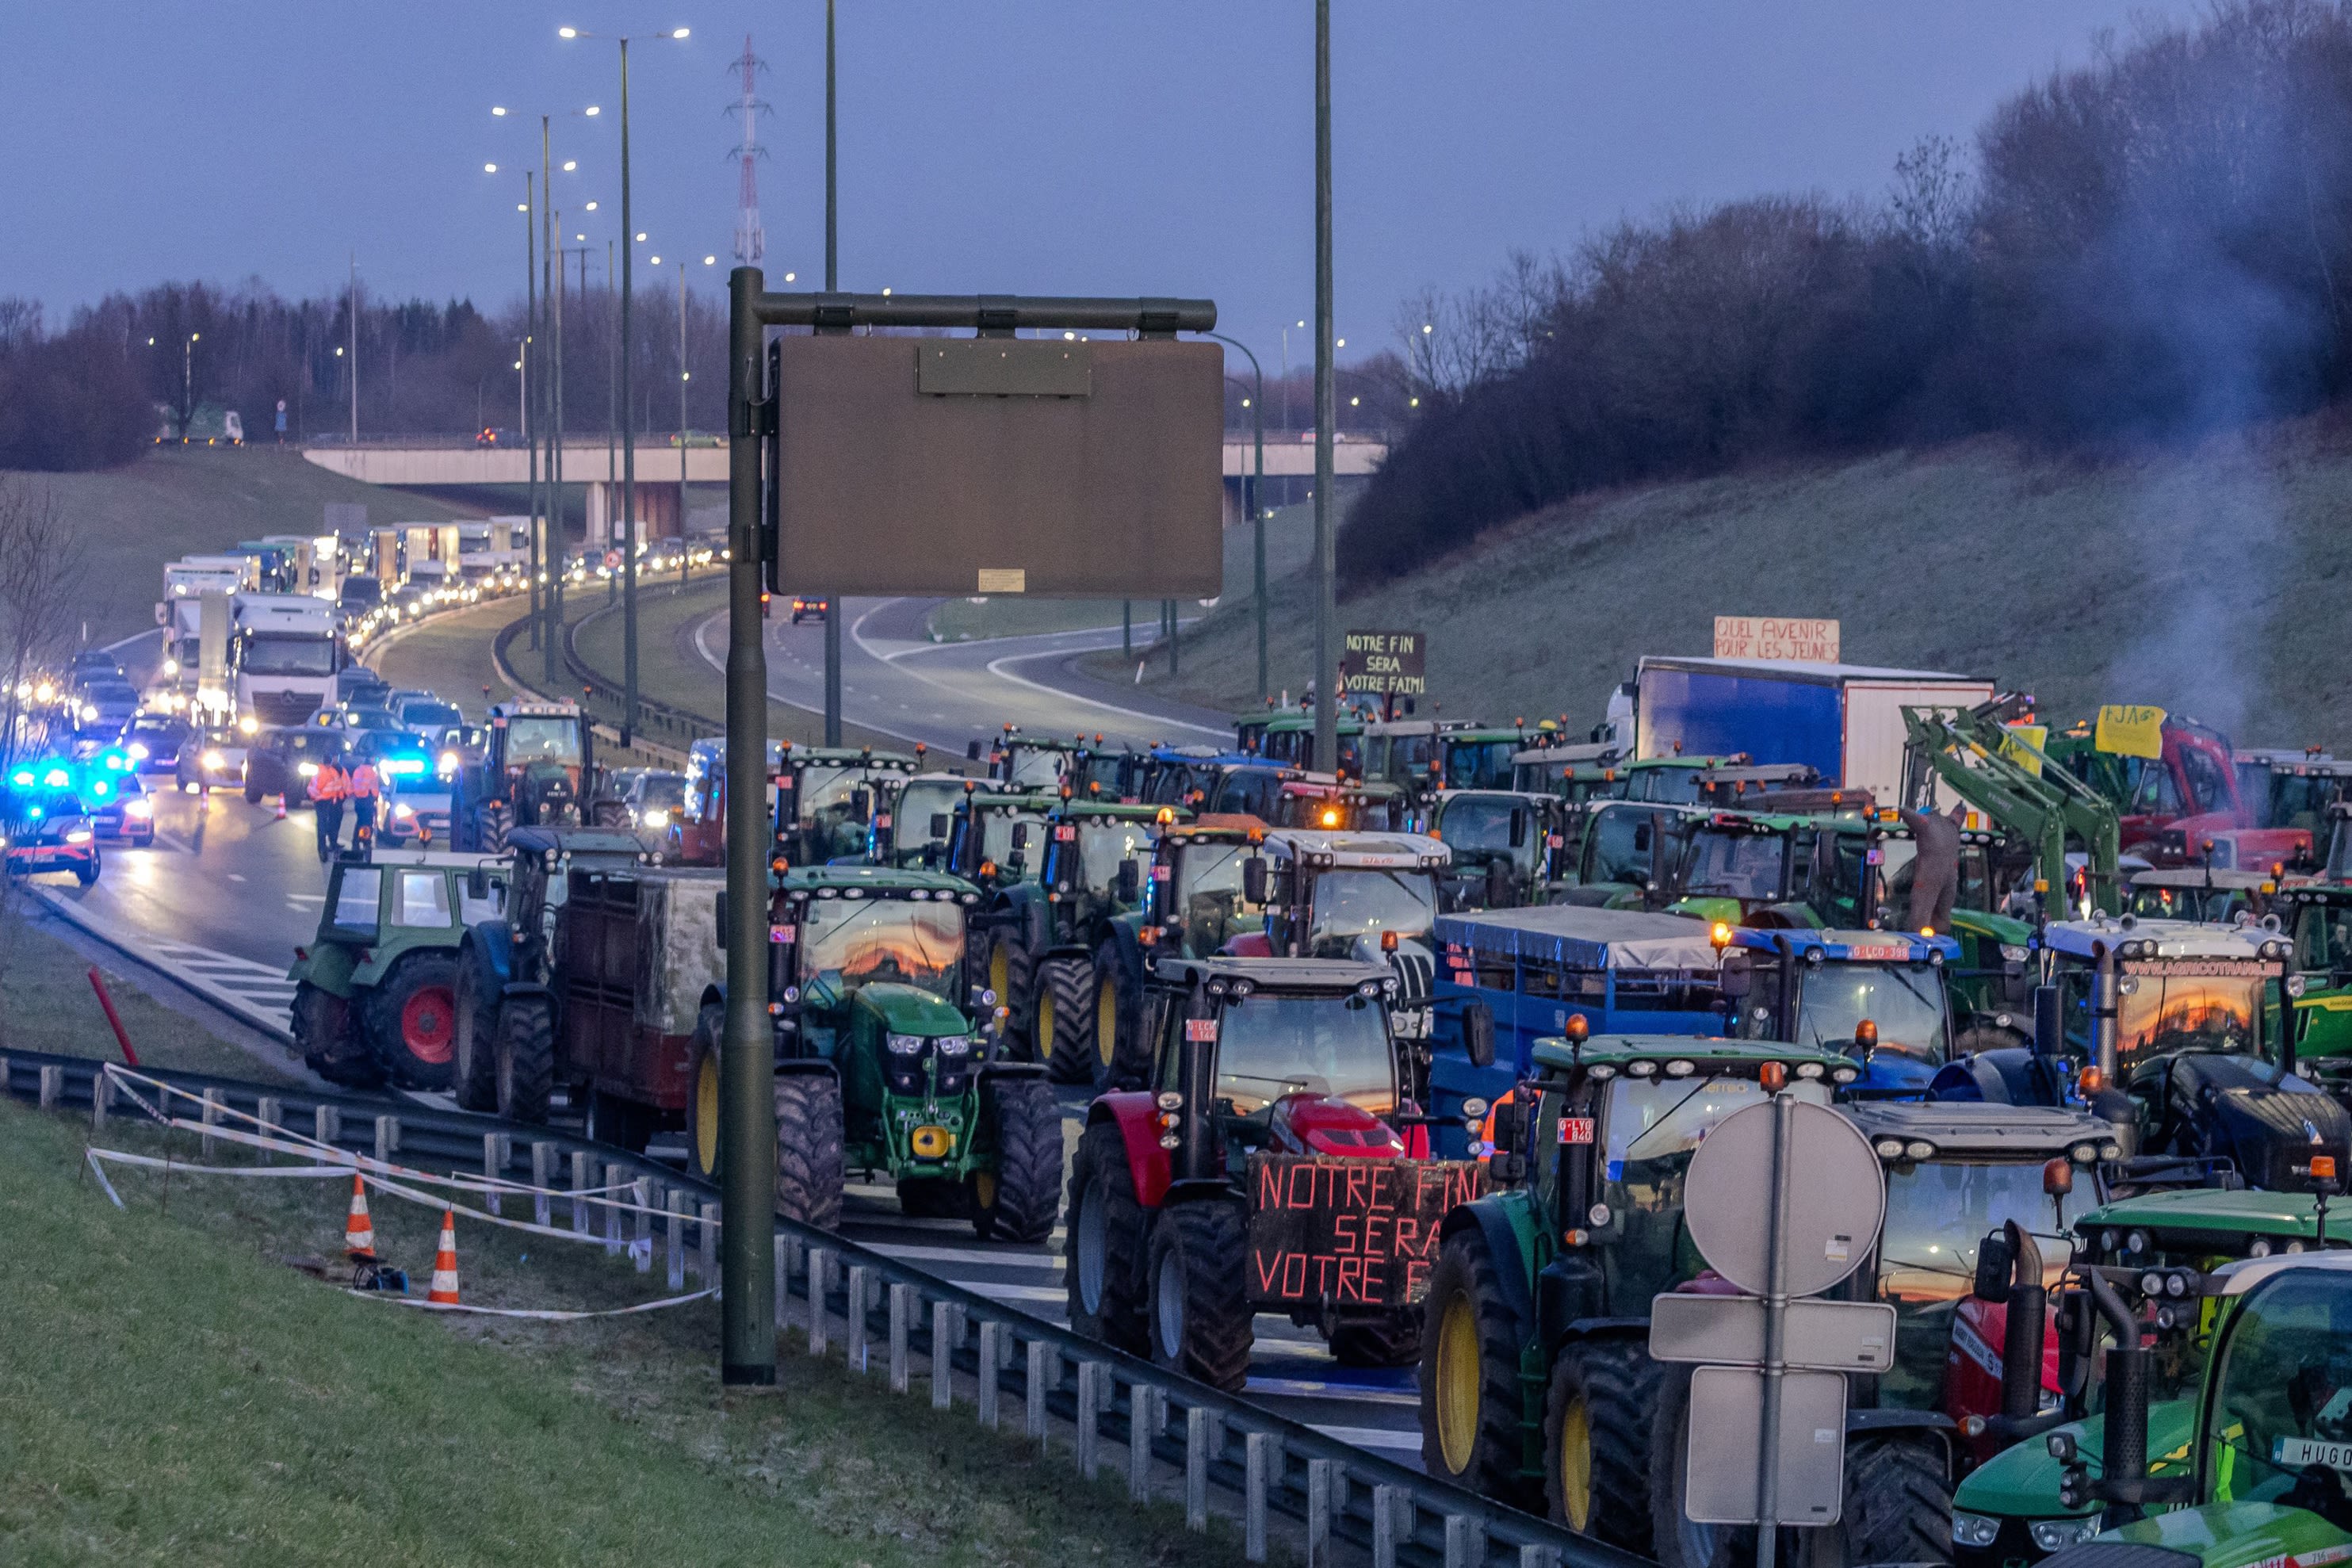 Boerenactie op snelweg van Breda naar Antwerpen voorbij